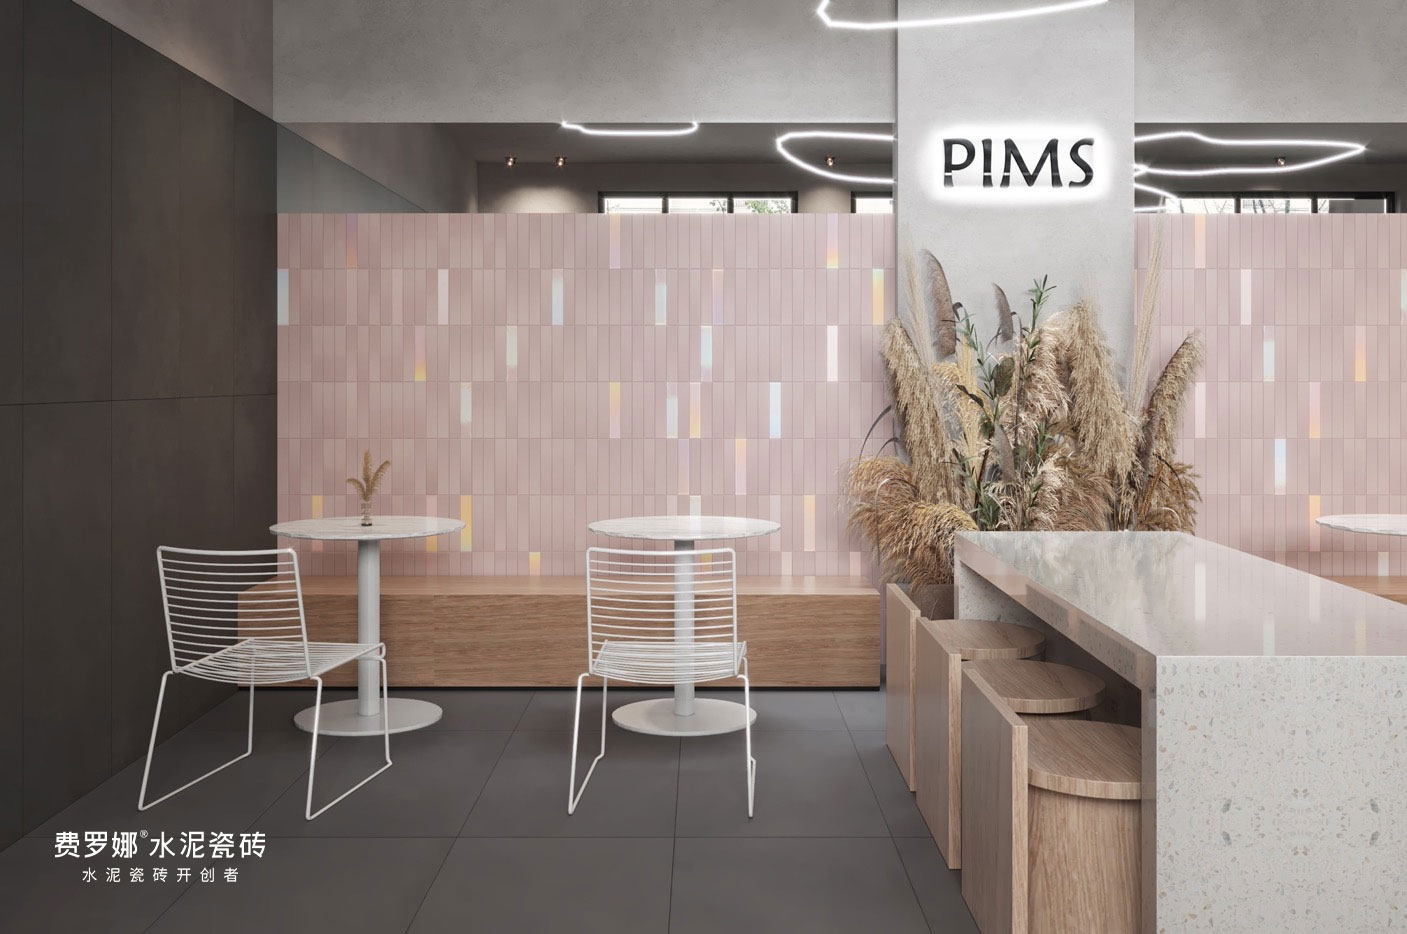 费罗娜水泥瓷砖的品牌战略步步升级，用国际化视野传递品质的设计